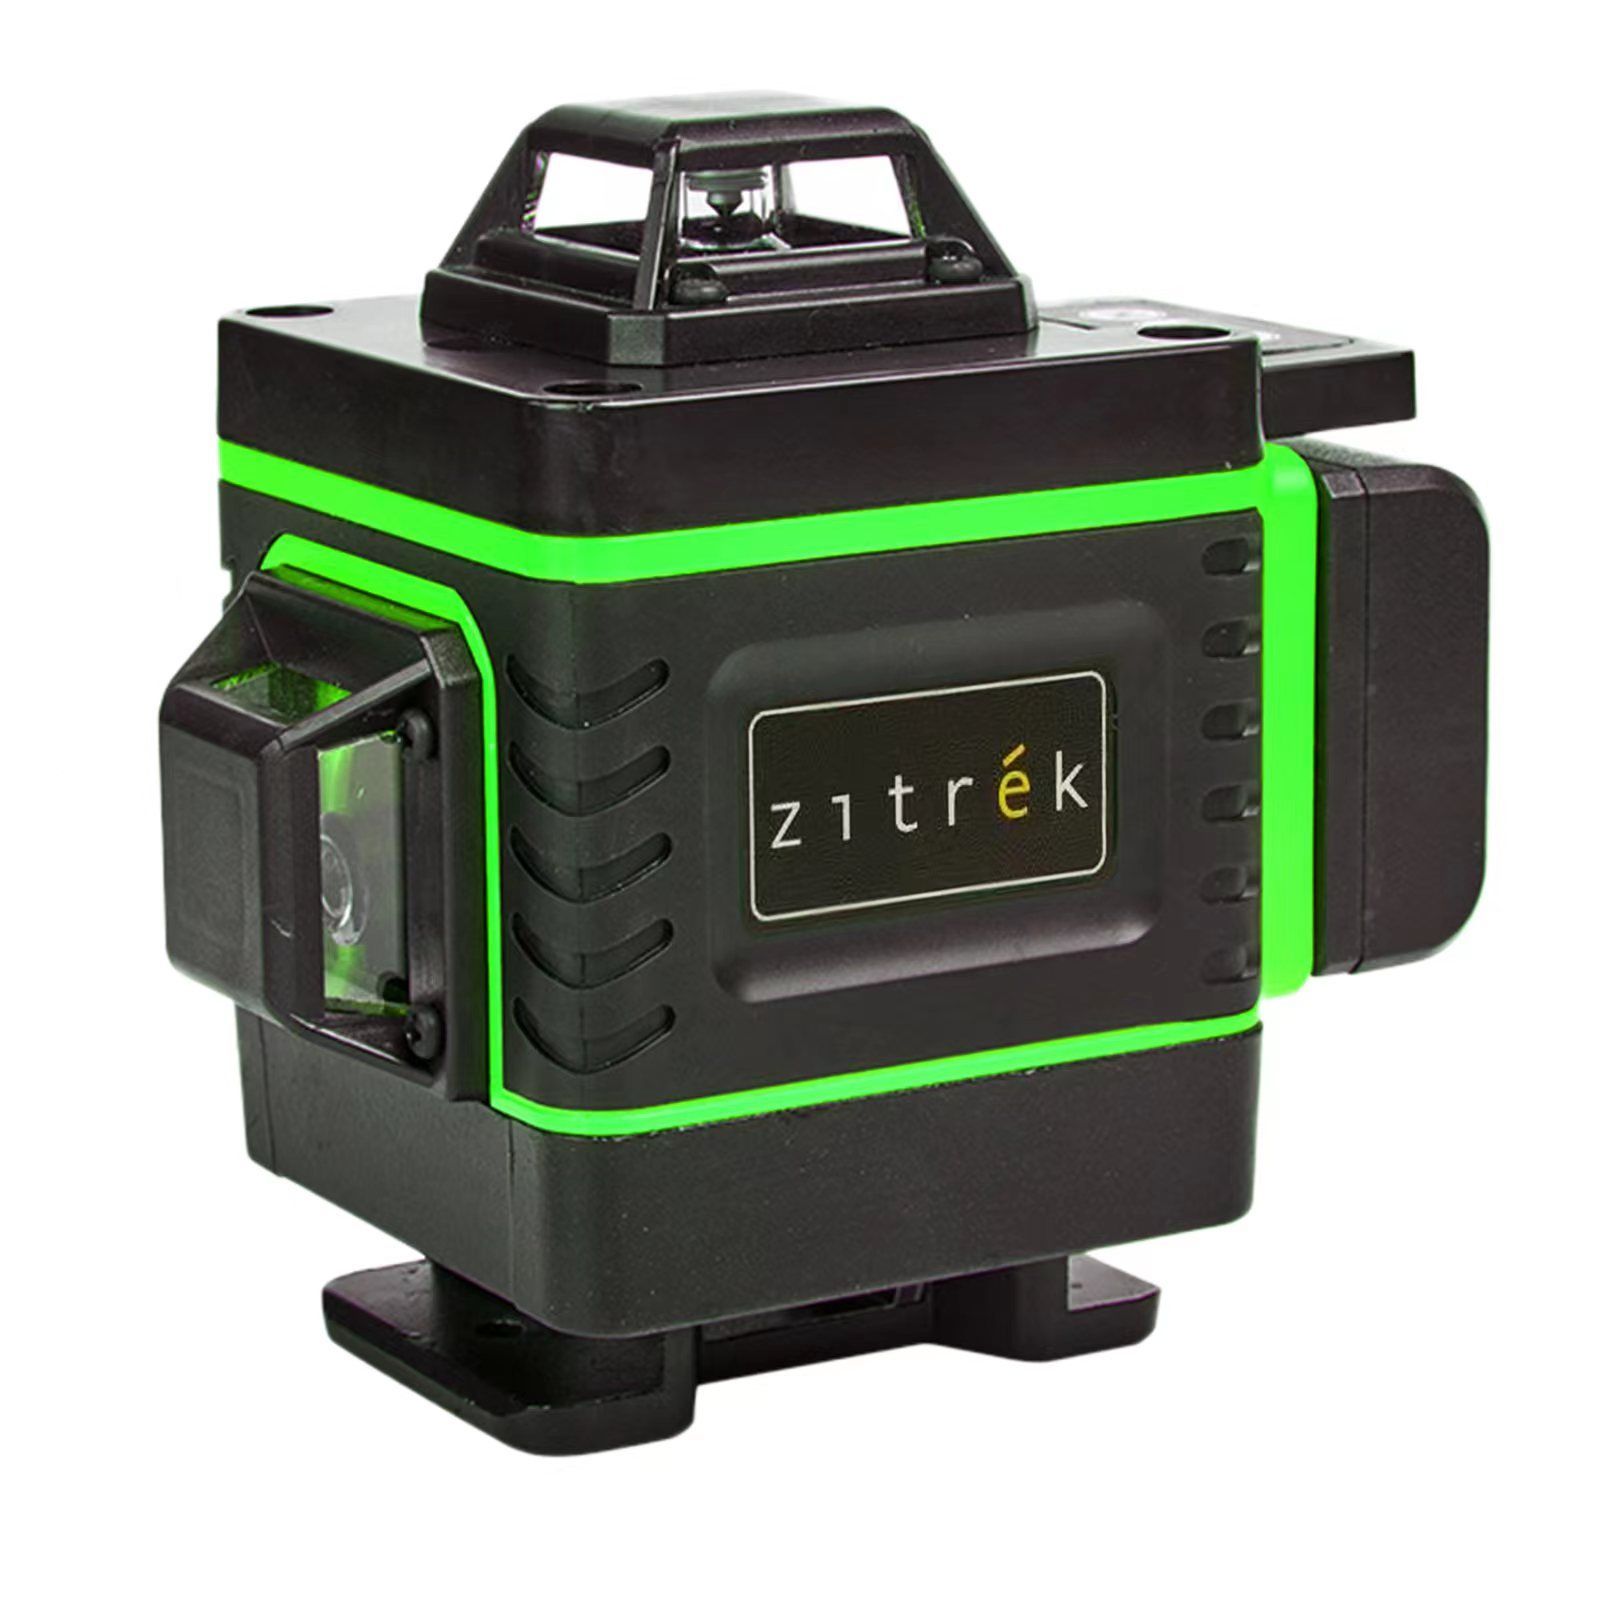 Ll12 gl cube. Zitrek ll16-gl-Cube. Zitrek ll16-gl-Cube (065-0167). Cube 16. Лазер куб купить.